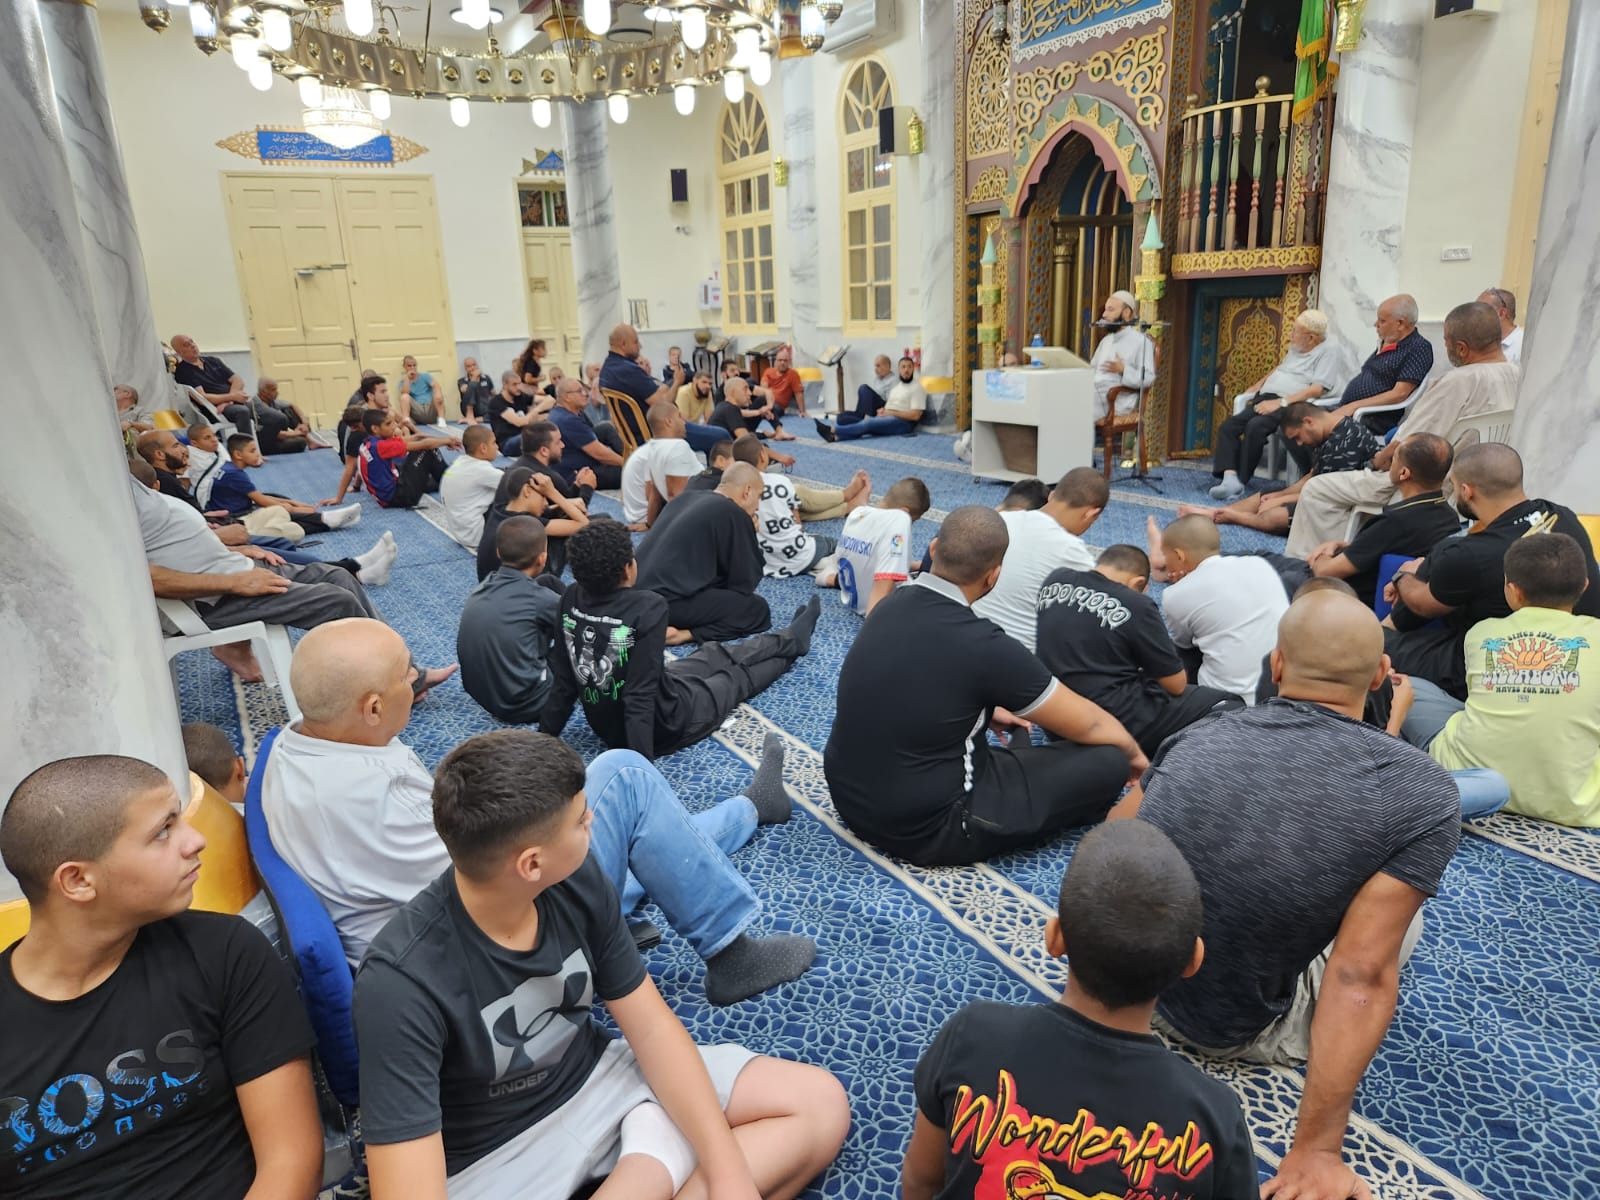 يافا: بالصور الشيخ رفاد غانم يحل ضيفاً على مجالس الإيمان في مسجد النزهة